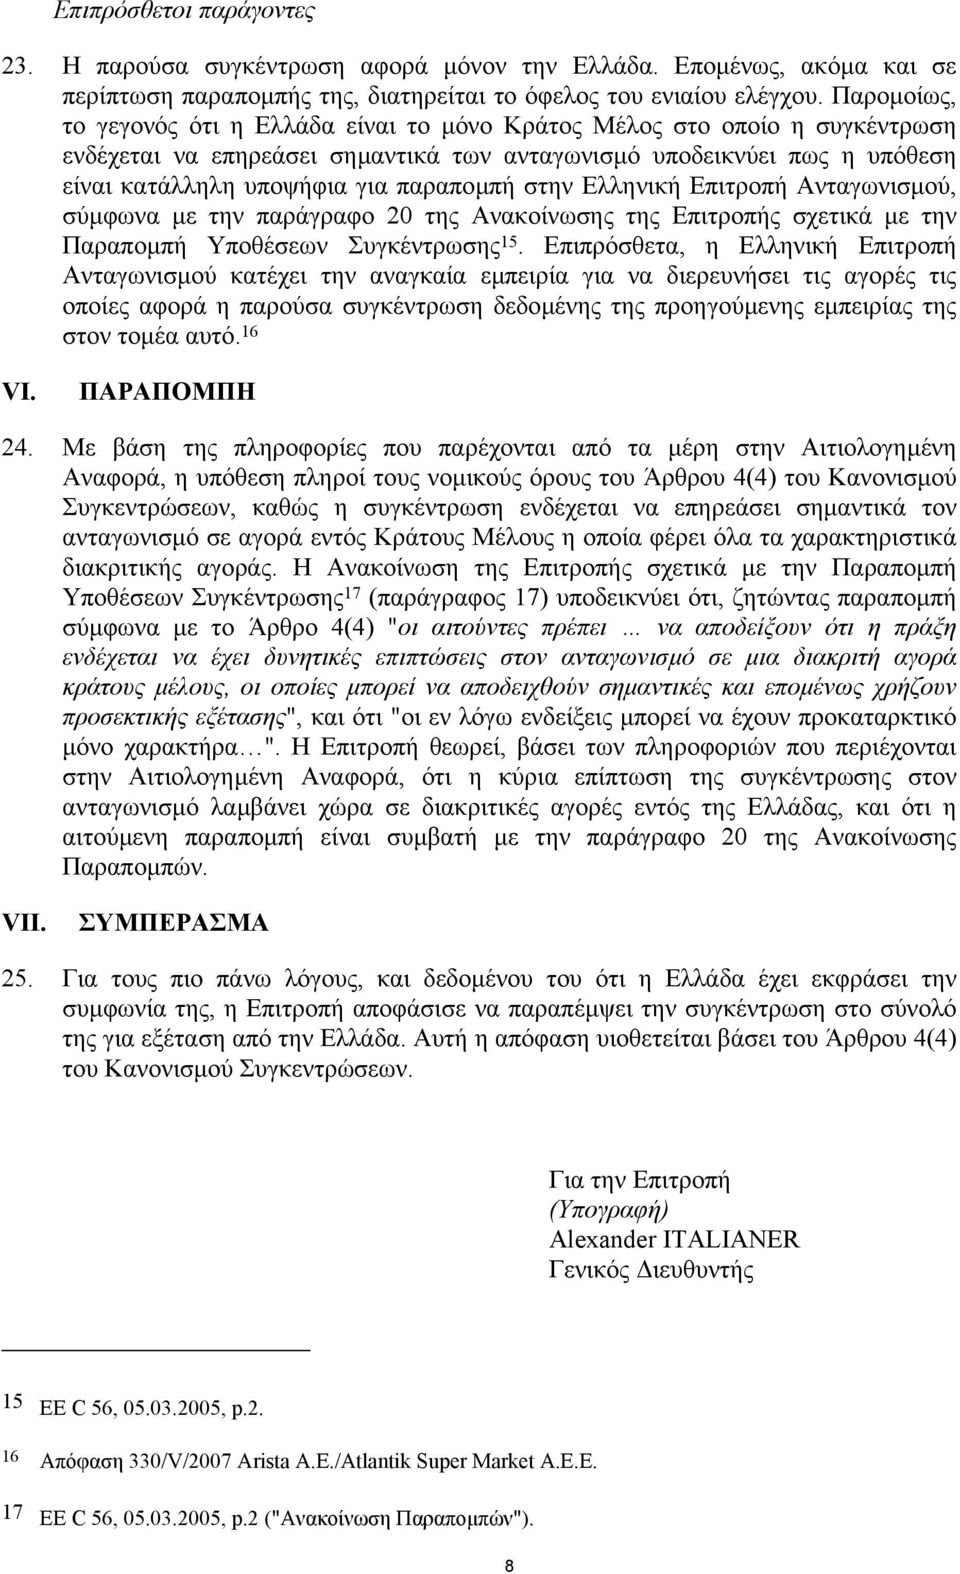 στην Ελληνική Επιτροπή Ανταγωνισµού, σύµφωνα µε την παράγραφο 20 της Ανακοίνωσης της Επιτροπής σχετικά µε την Παραποµπή Υποθέσεων Συγκέντρωσης 15.